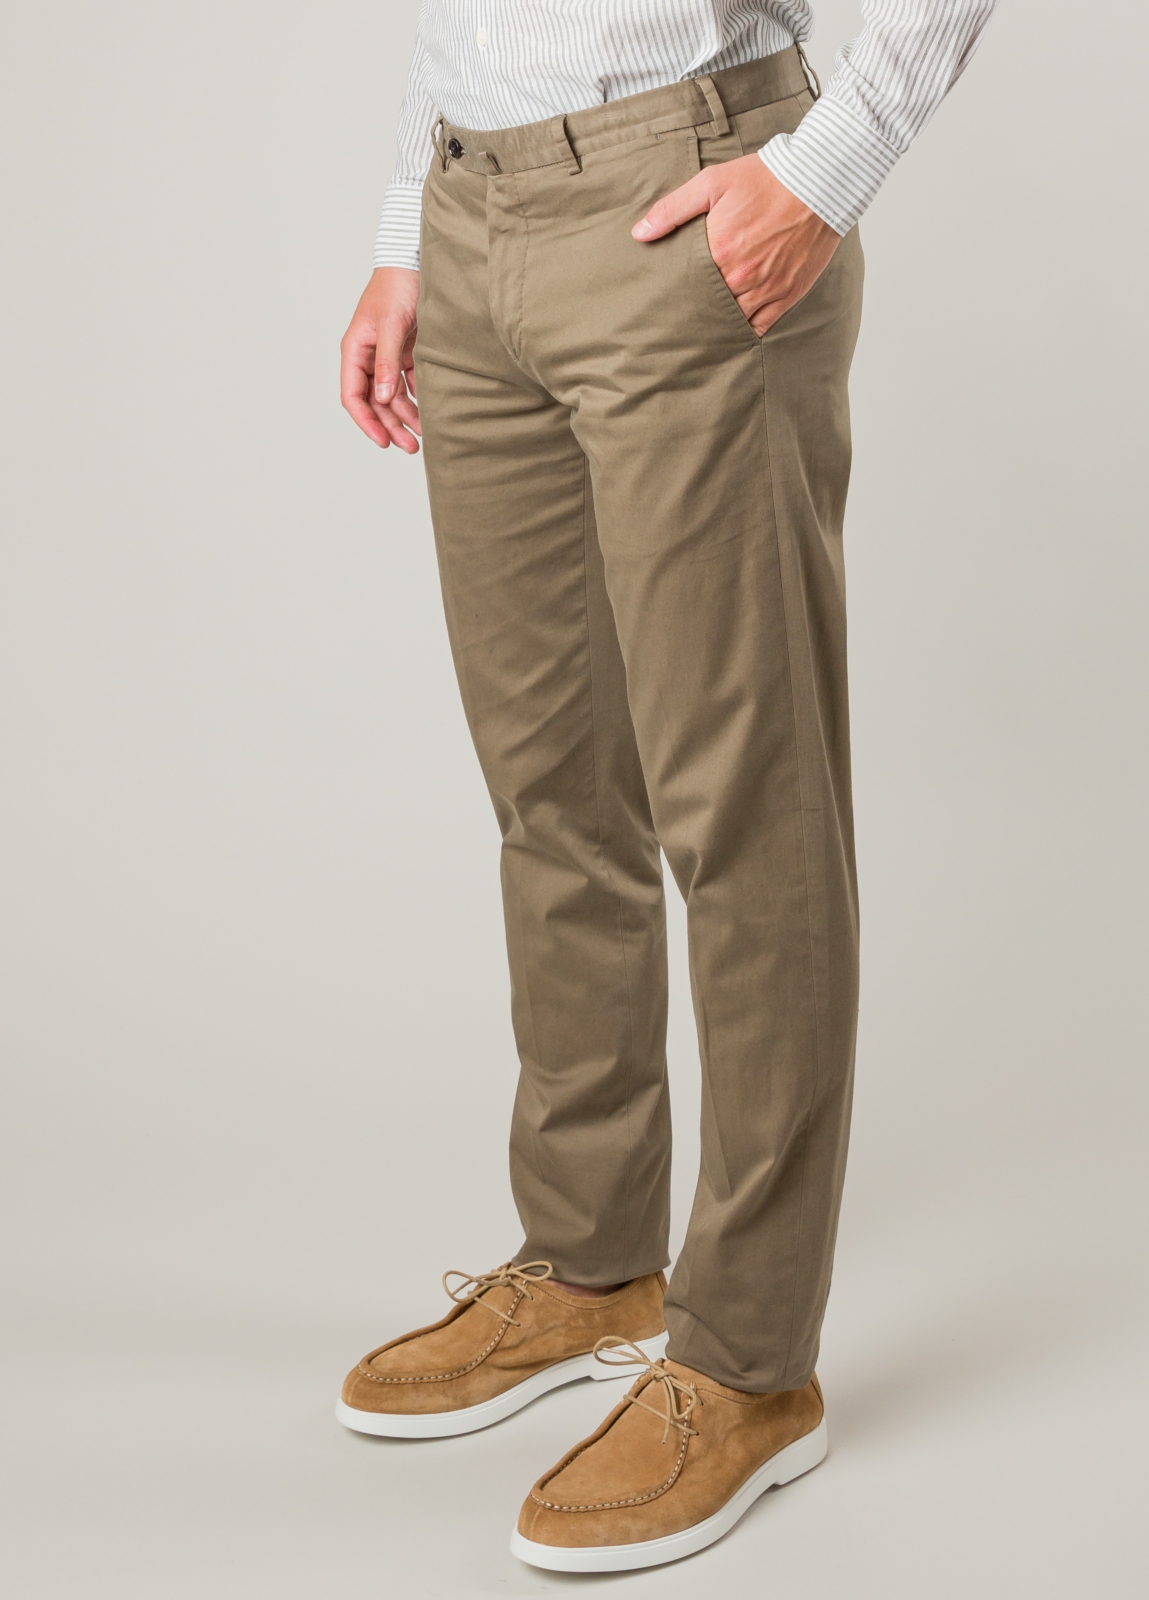 Pantalón sport FUREST COLECCION algodón marrón - Ítem1